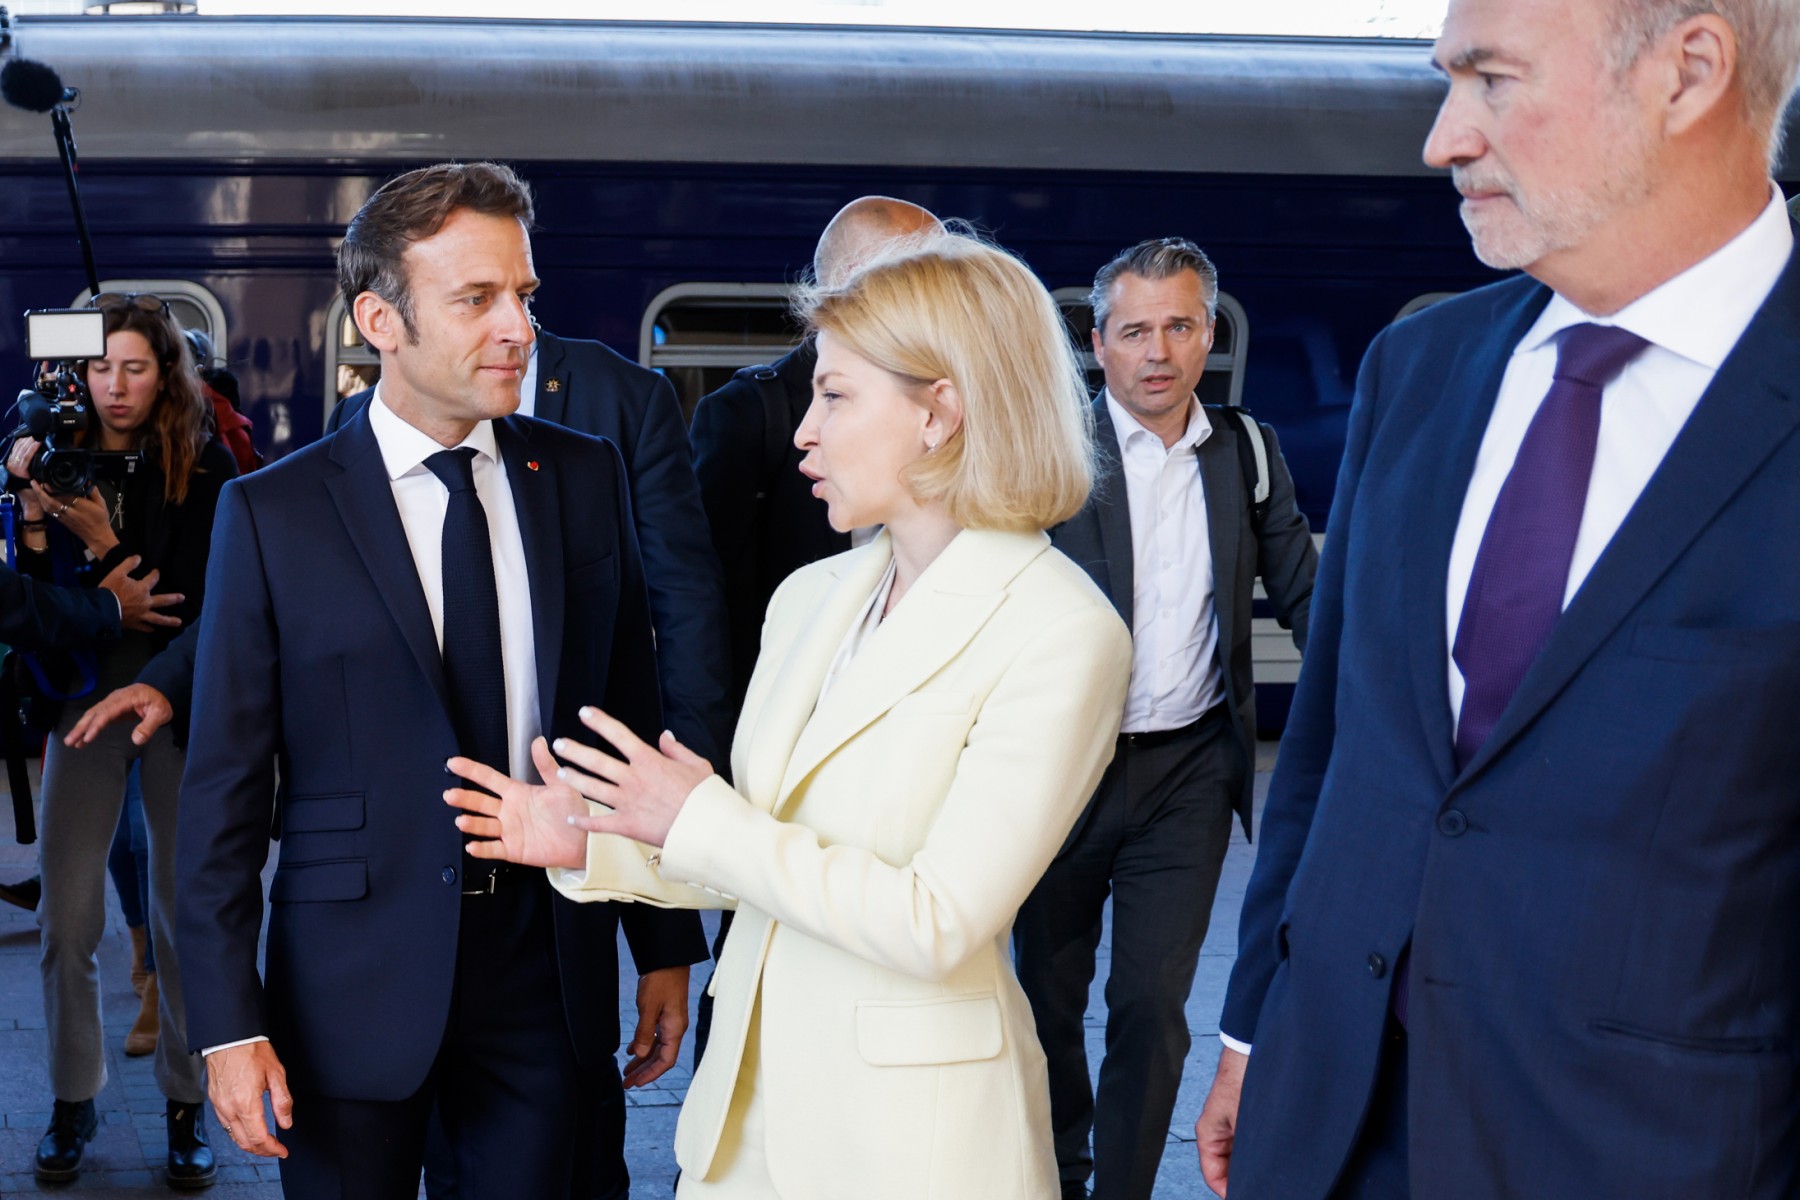 La vice-première ministre ukrainienne pour l'intégration européenne et euro-atlantique Olha Stefanishyna s'entretient avec le président français Emmanuel Macron après l'avoir accueilli à son arrivée à la gare de Kiev le 16 juin 2022 (Photo, AFP).